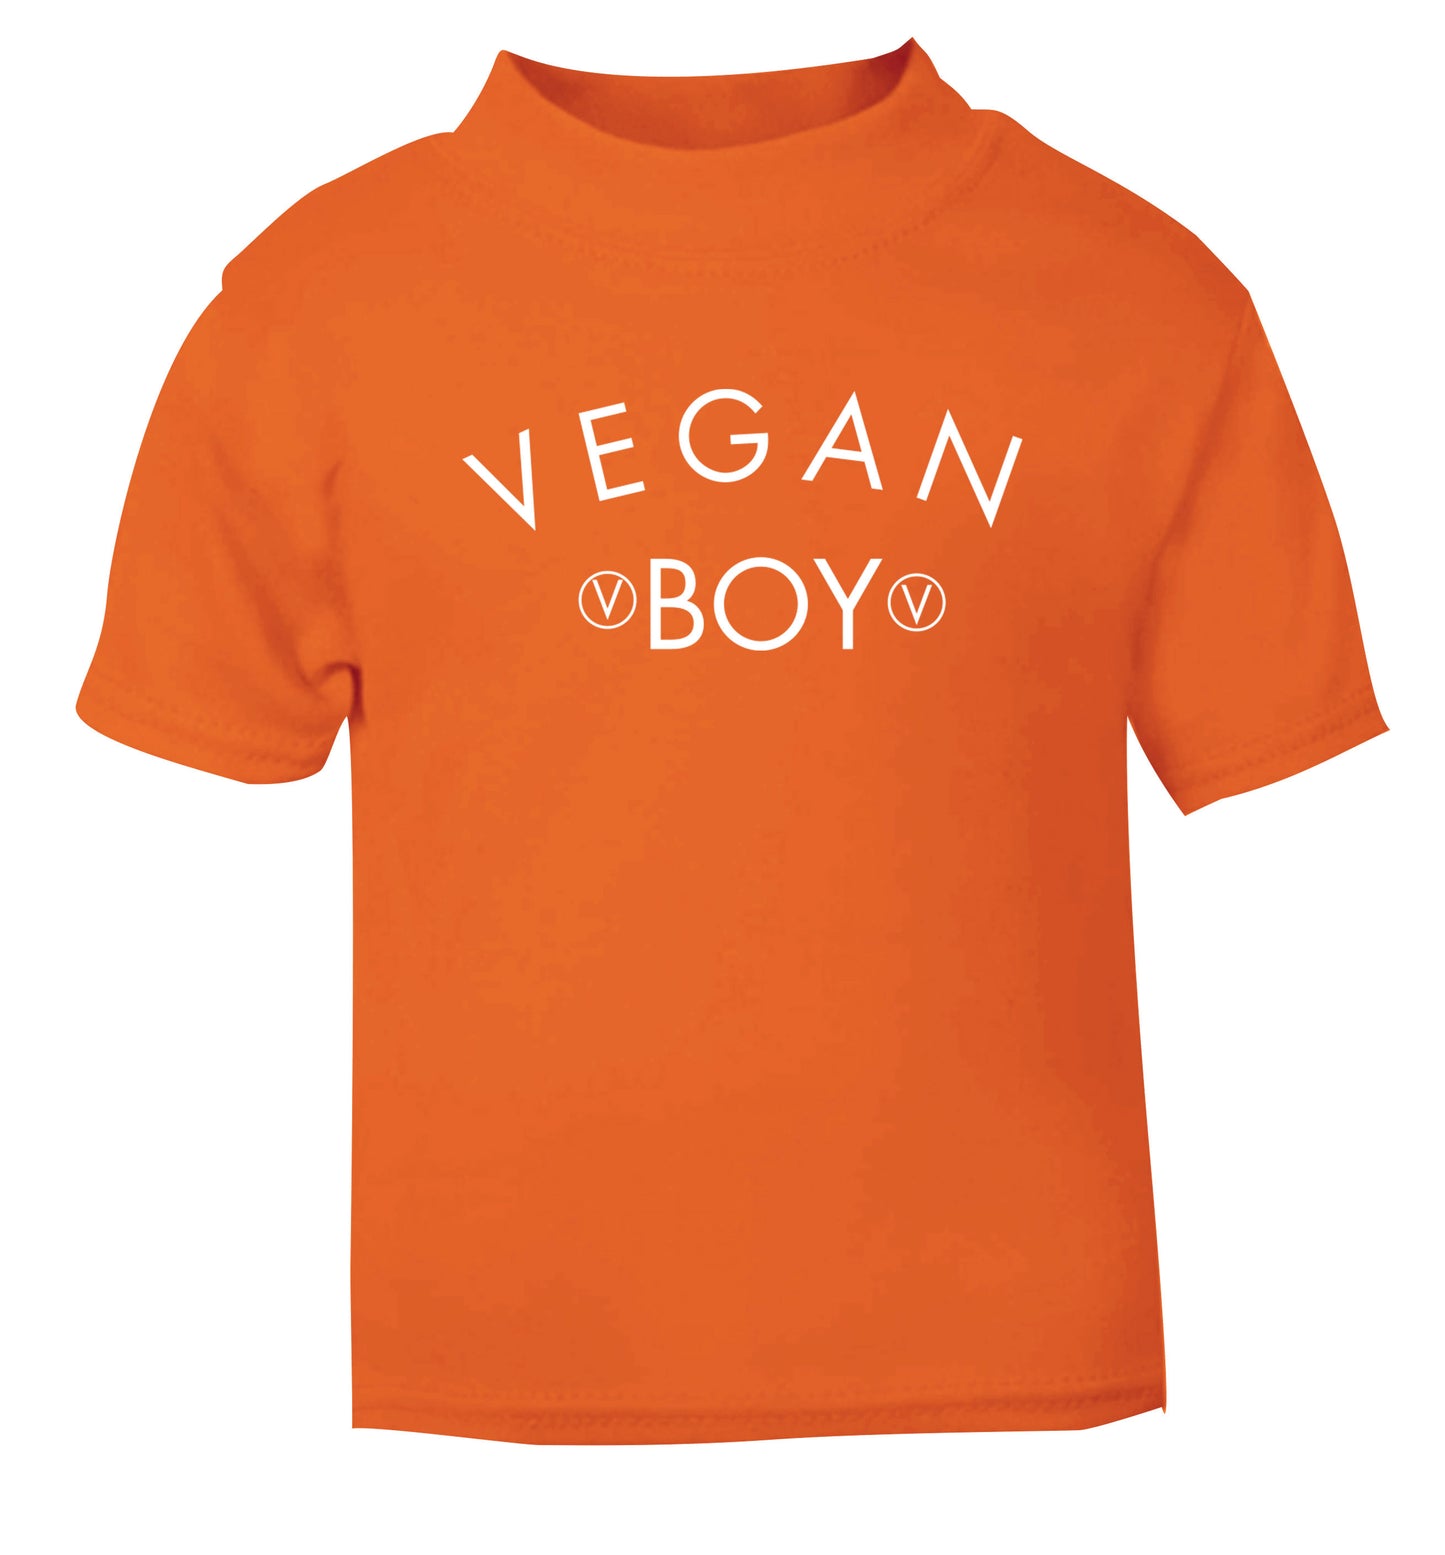 Vegan boy orange Baby Toddler Tshirt 2 Years